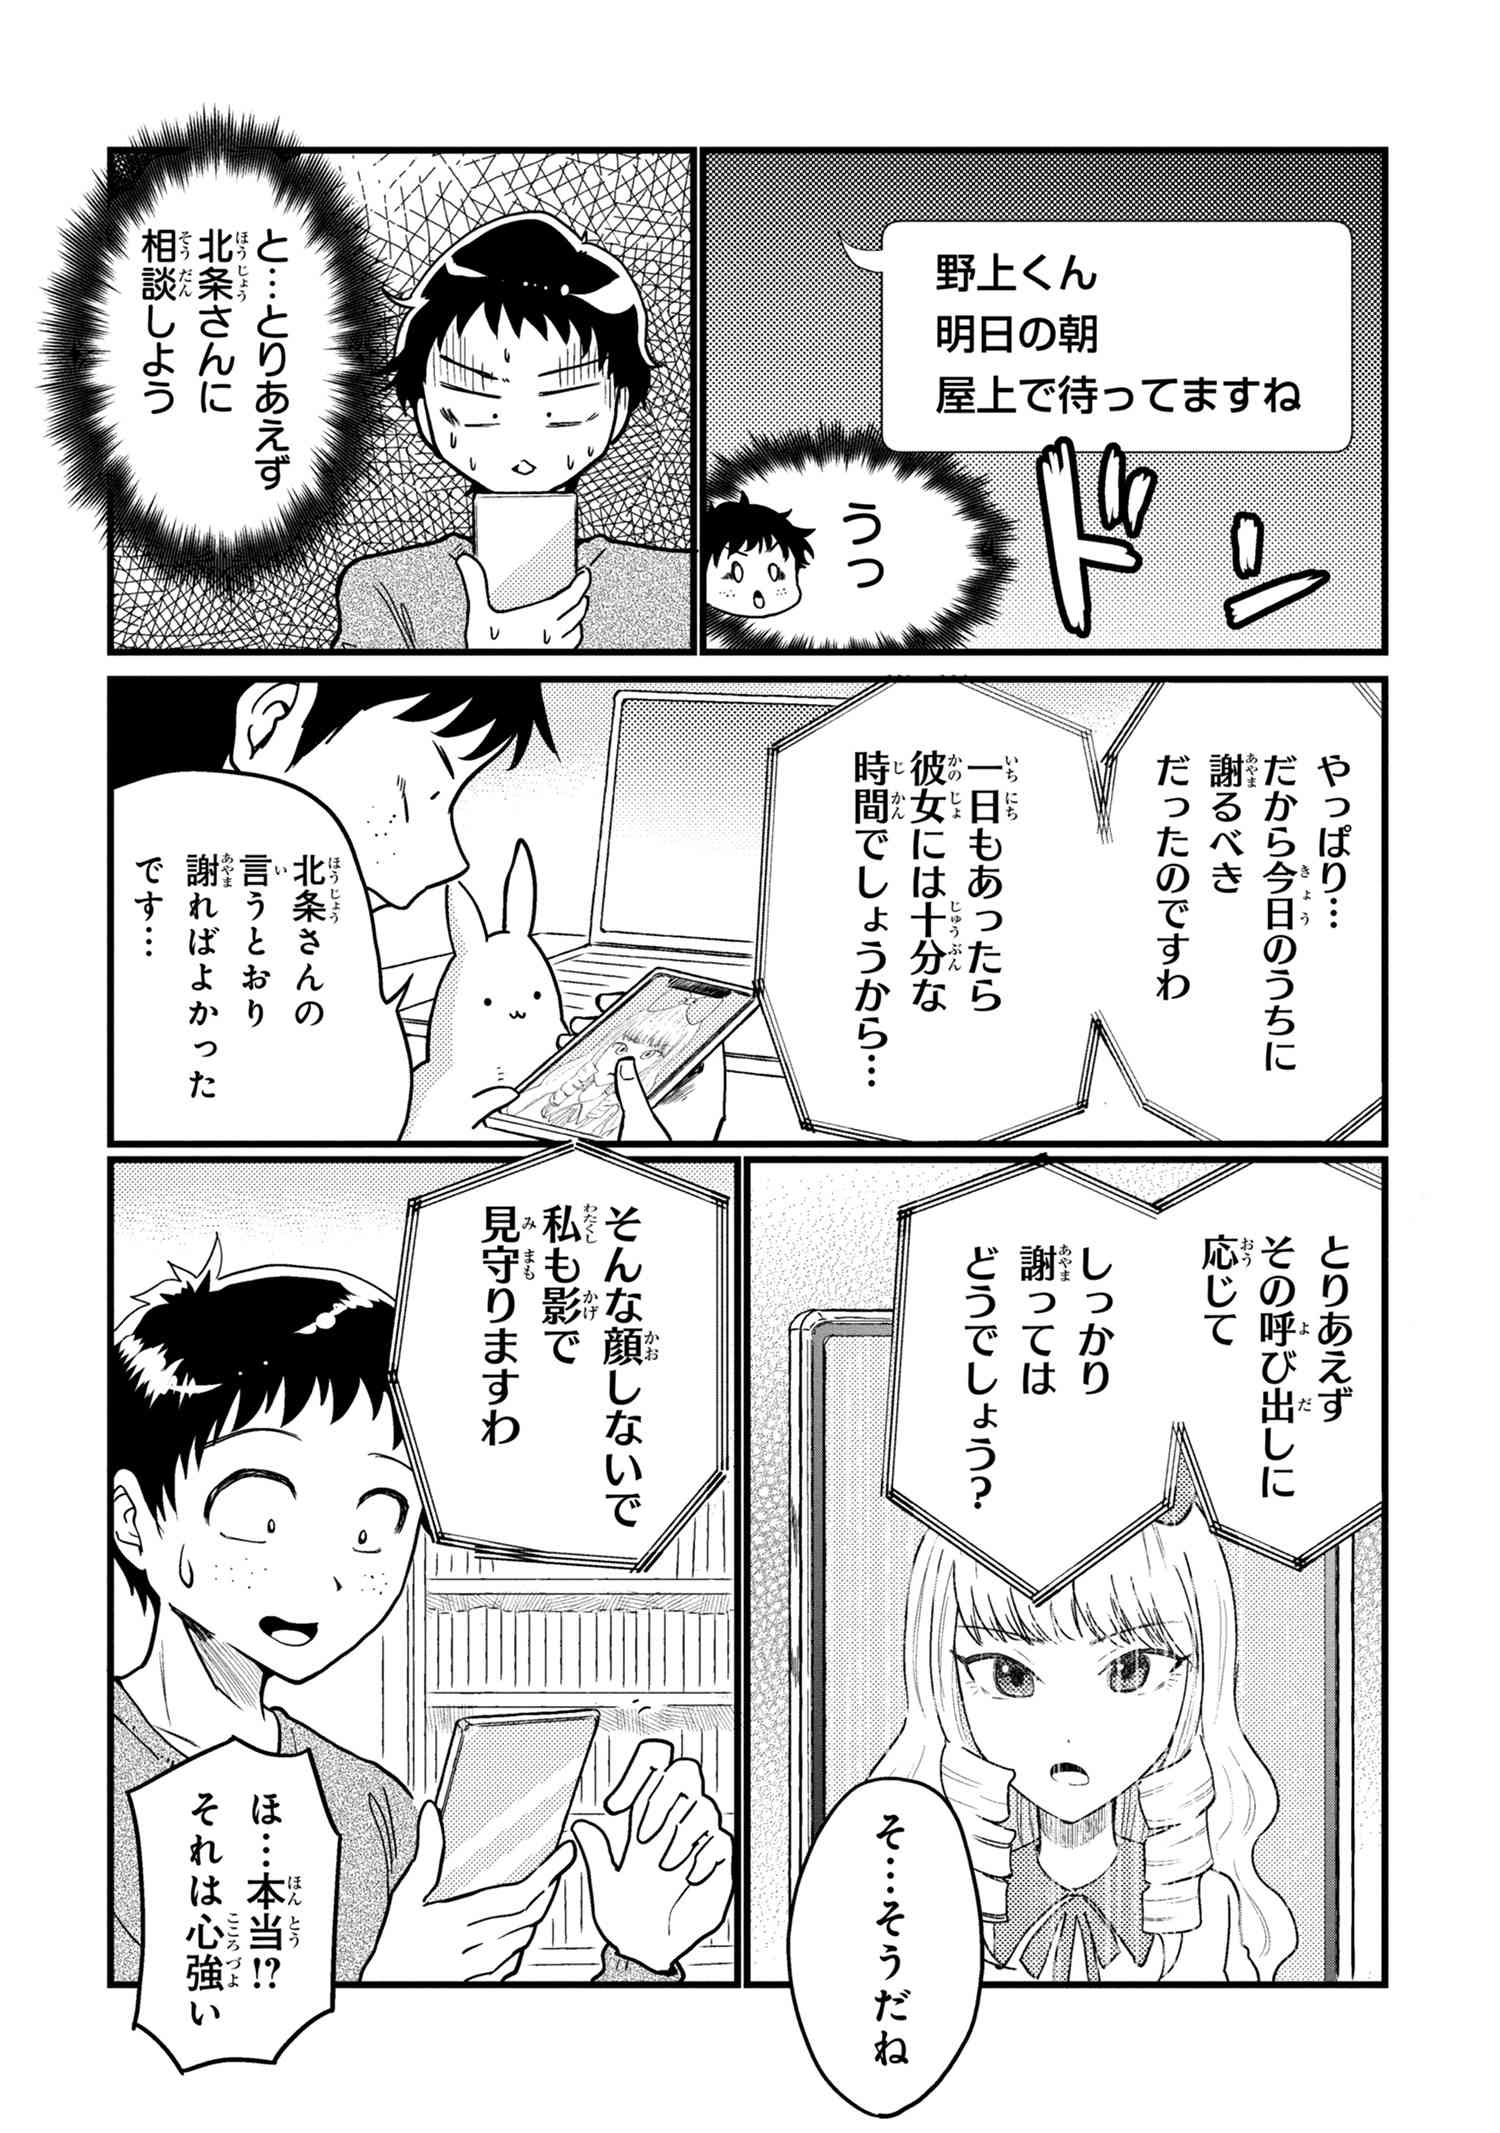 Houjou Urara no renai shousetsu o kaki nasai! - Chapter 14 - Page 2